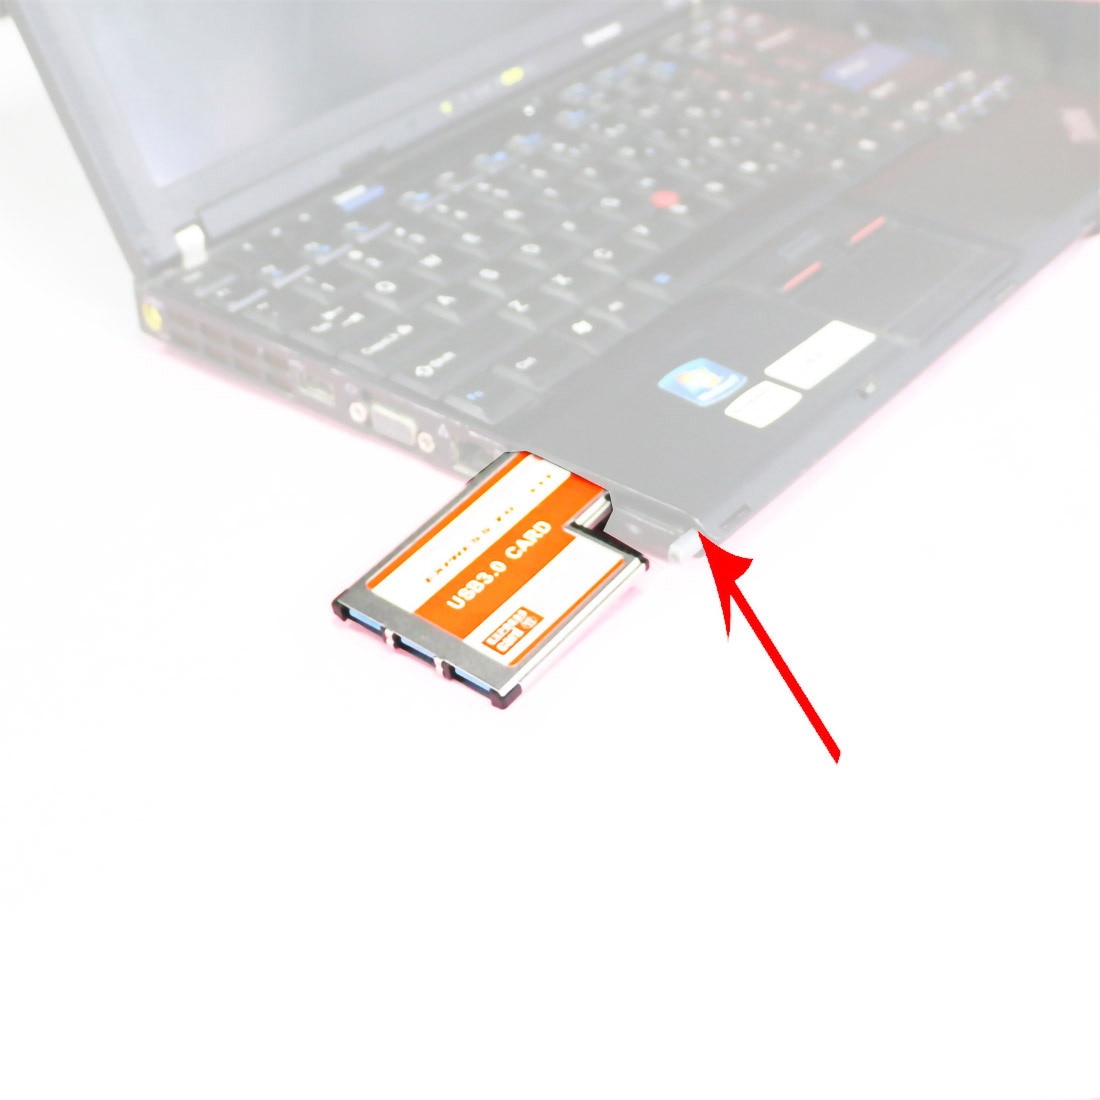 3 Poorten Verborgen In Usb 3.0 Naar Express Card 54 Mm USB3.0 Adapter Converter Voor Pcmcia Express Card Laptop Pc